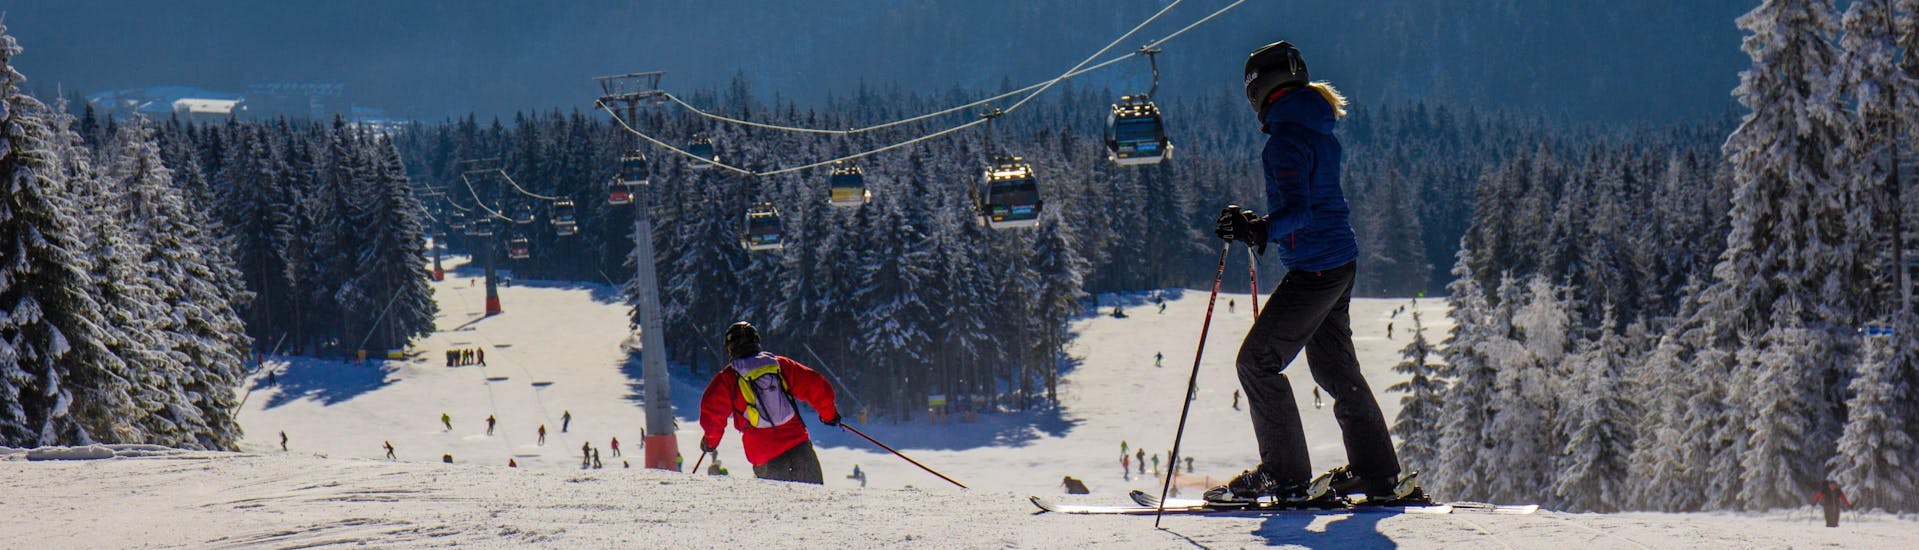 Blick auf die Pisten des Skigebiets Černá Hora, wo die örtlichen Skischulen ihre Skikurse anbieten.